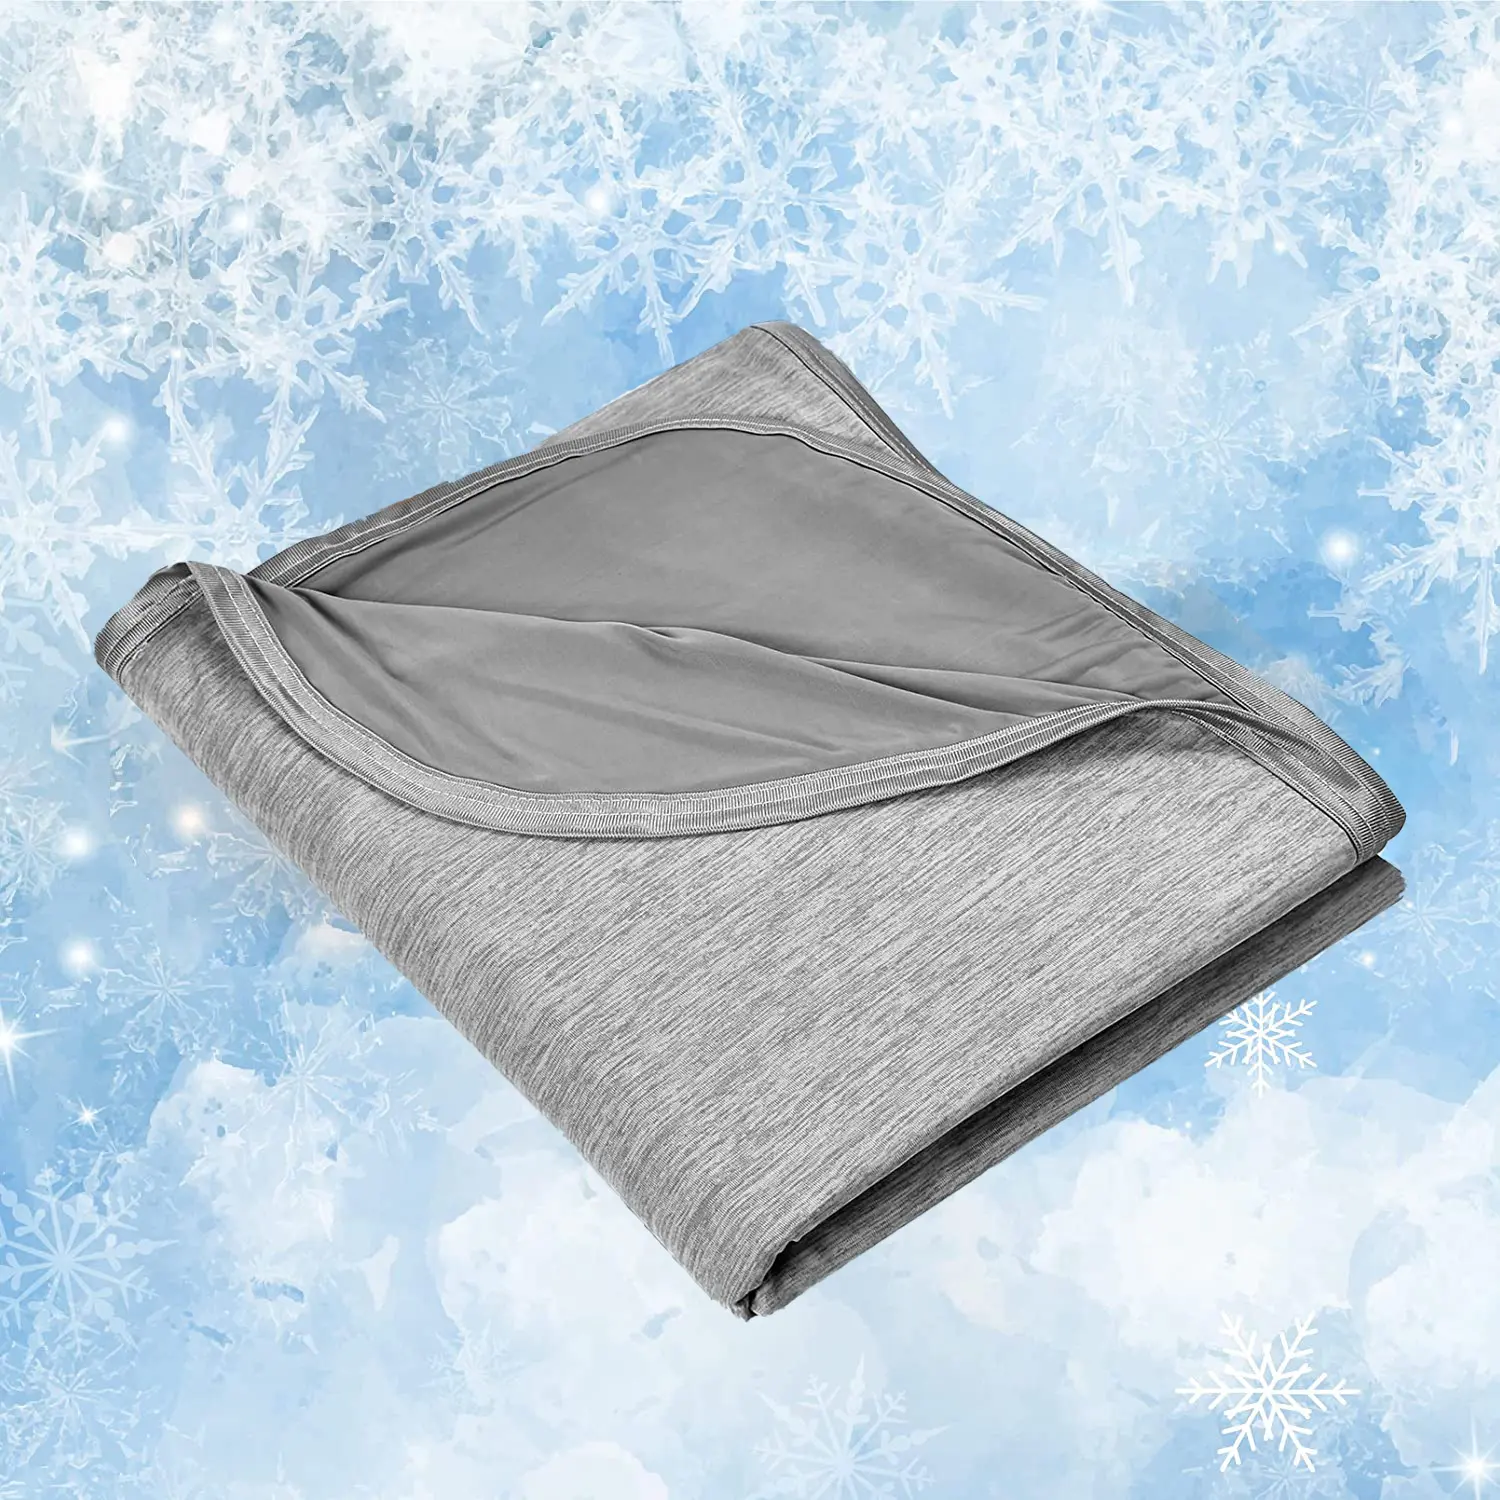 Охлаждающее одеяло для горячих шпалов легкое дышащее летнее холодное одеяло для дивана от производителя